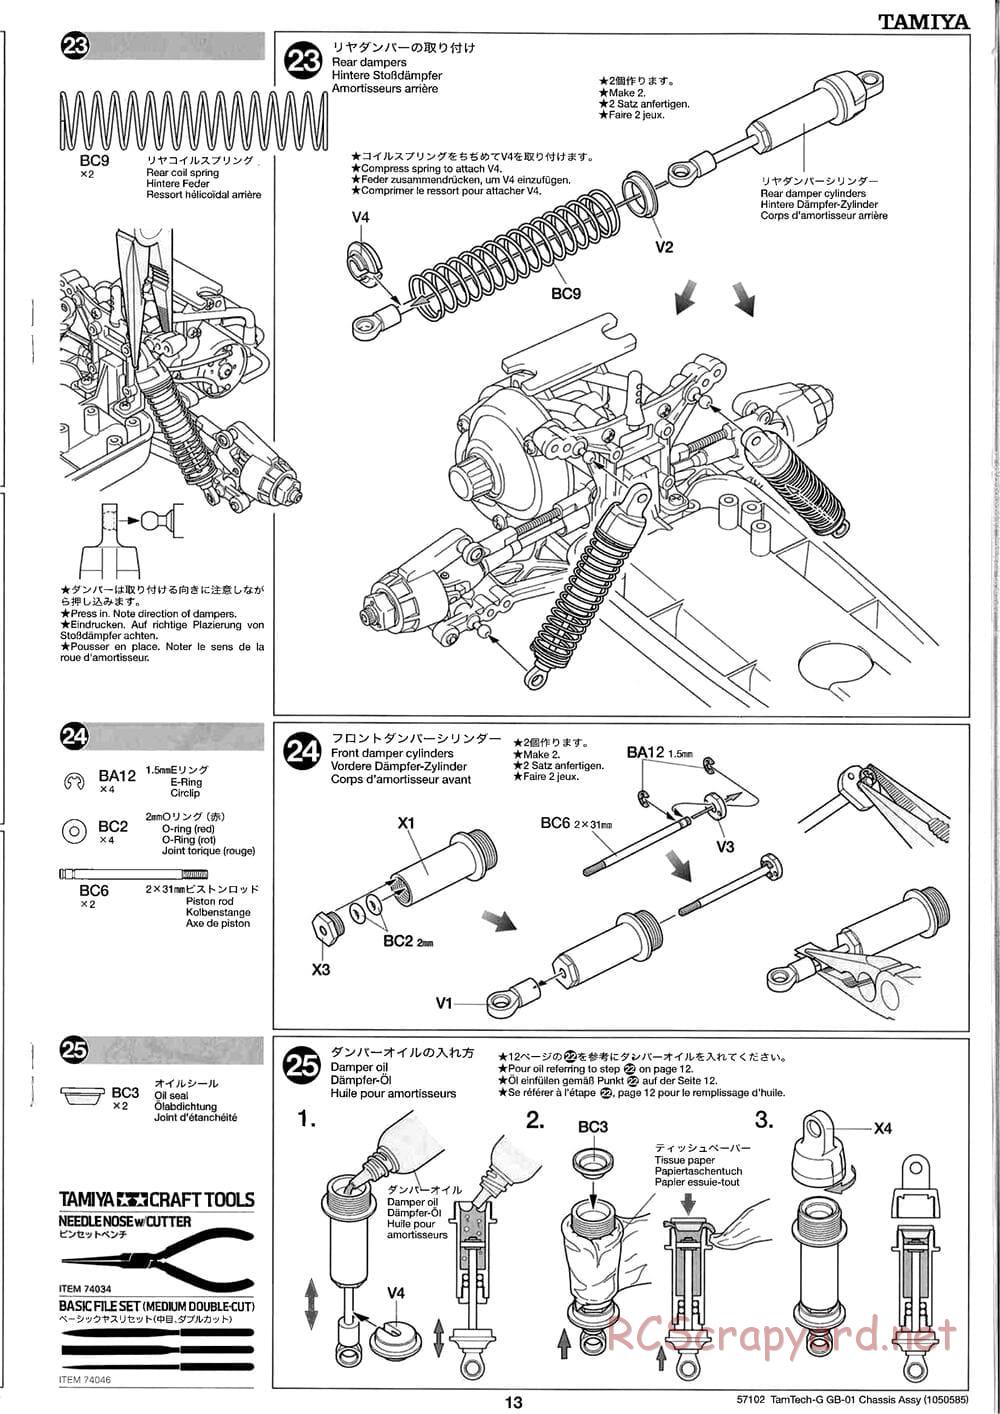 Tamiya - GB-01 Chassis - Manual - Page 13